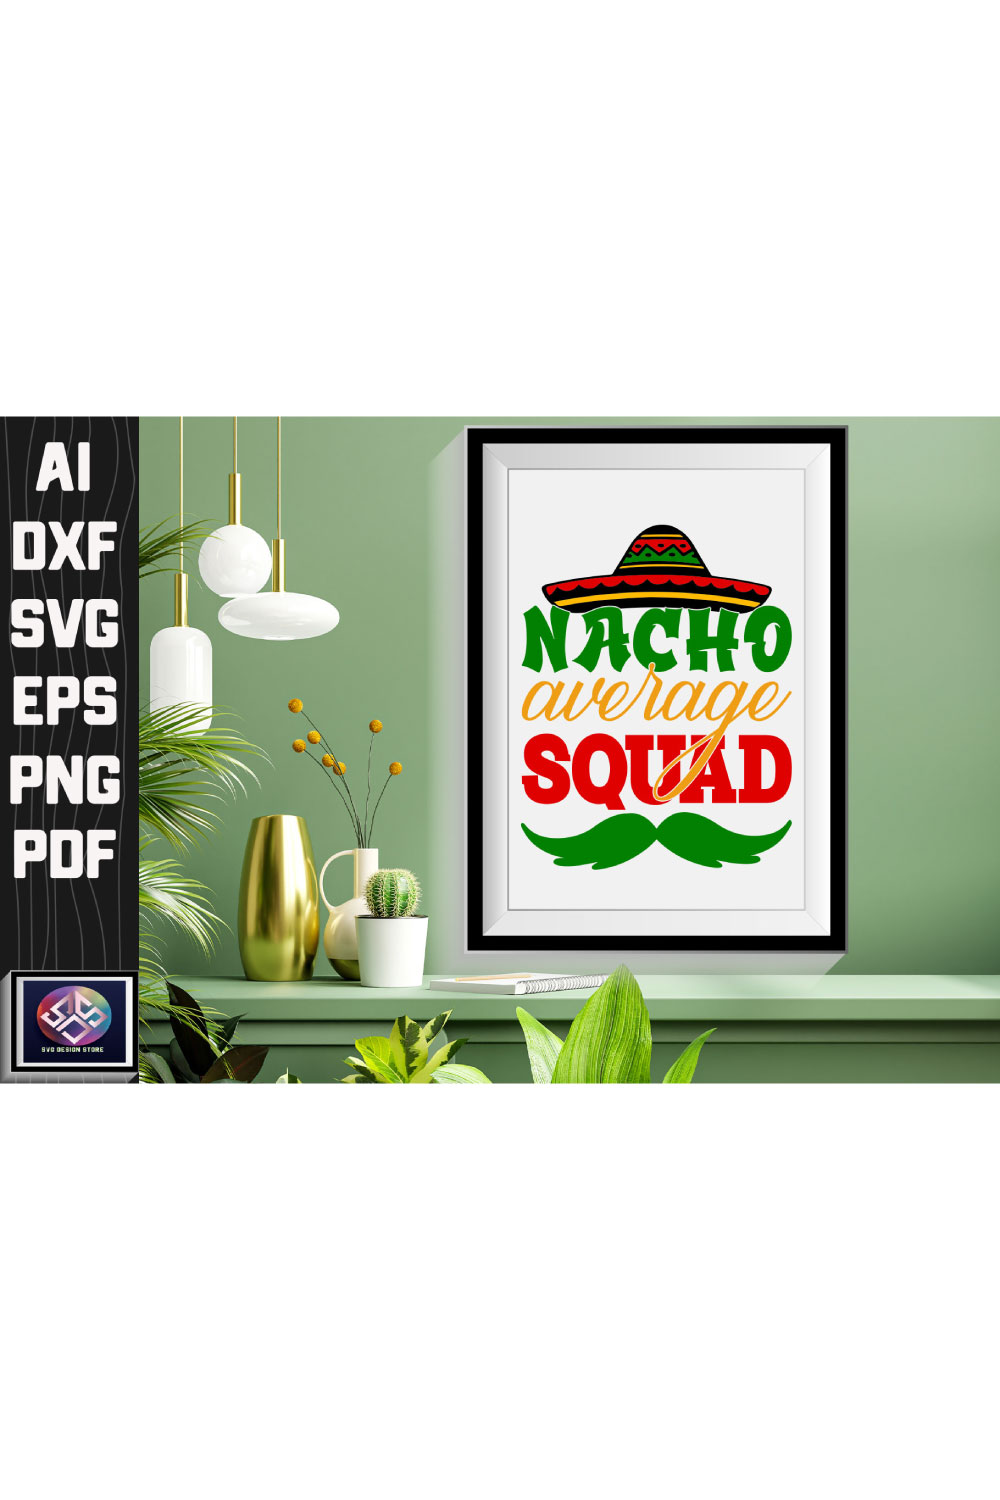 Nacho Average Squad pinterest preview image.